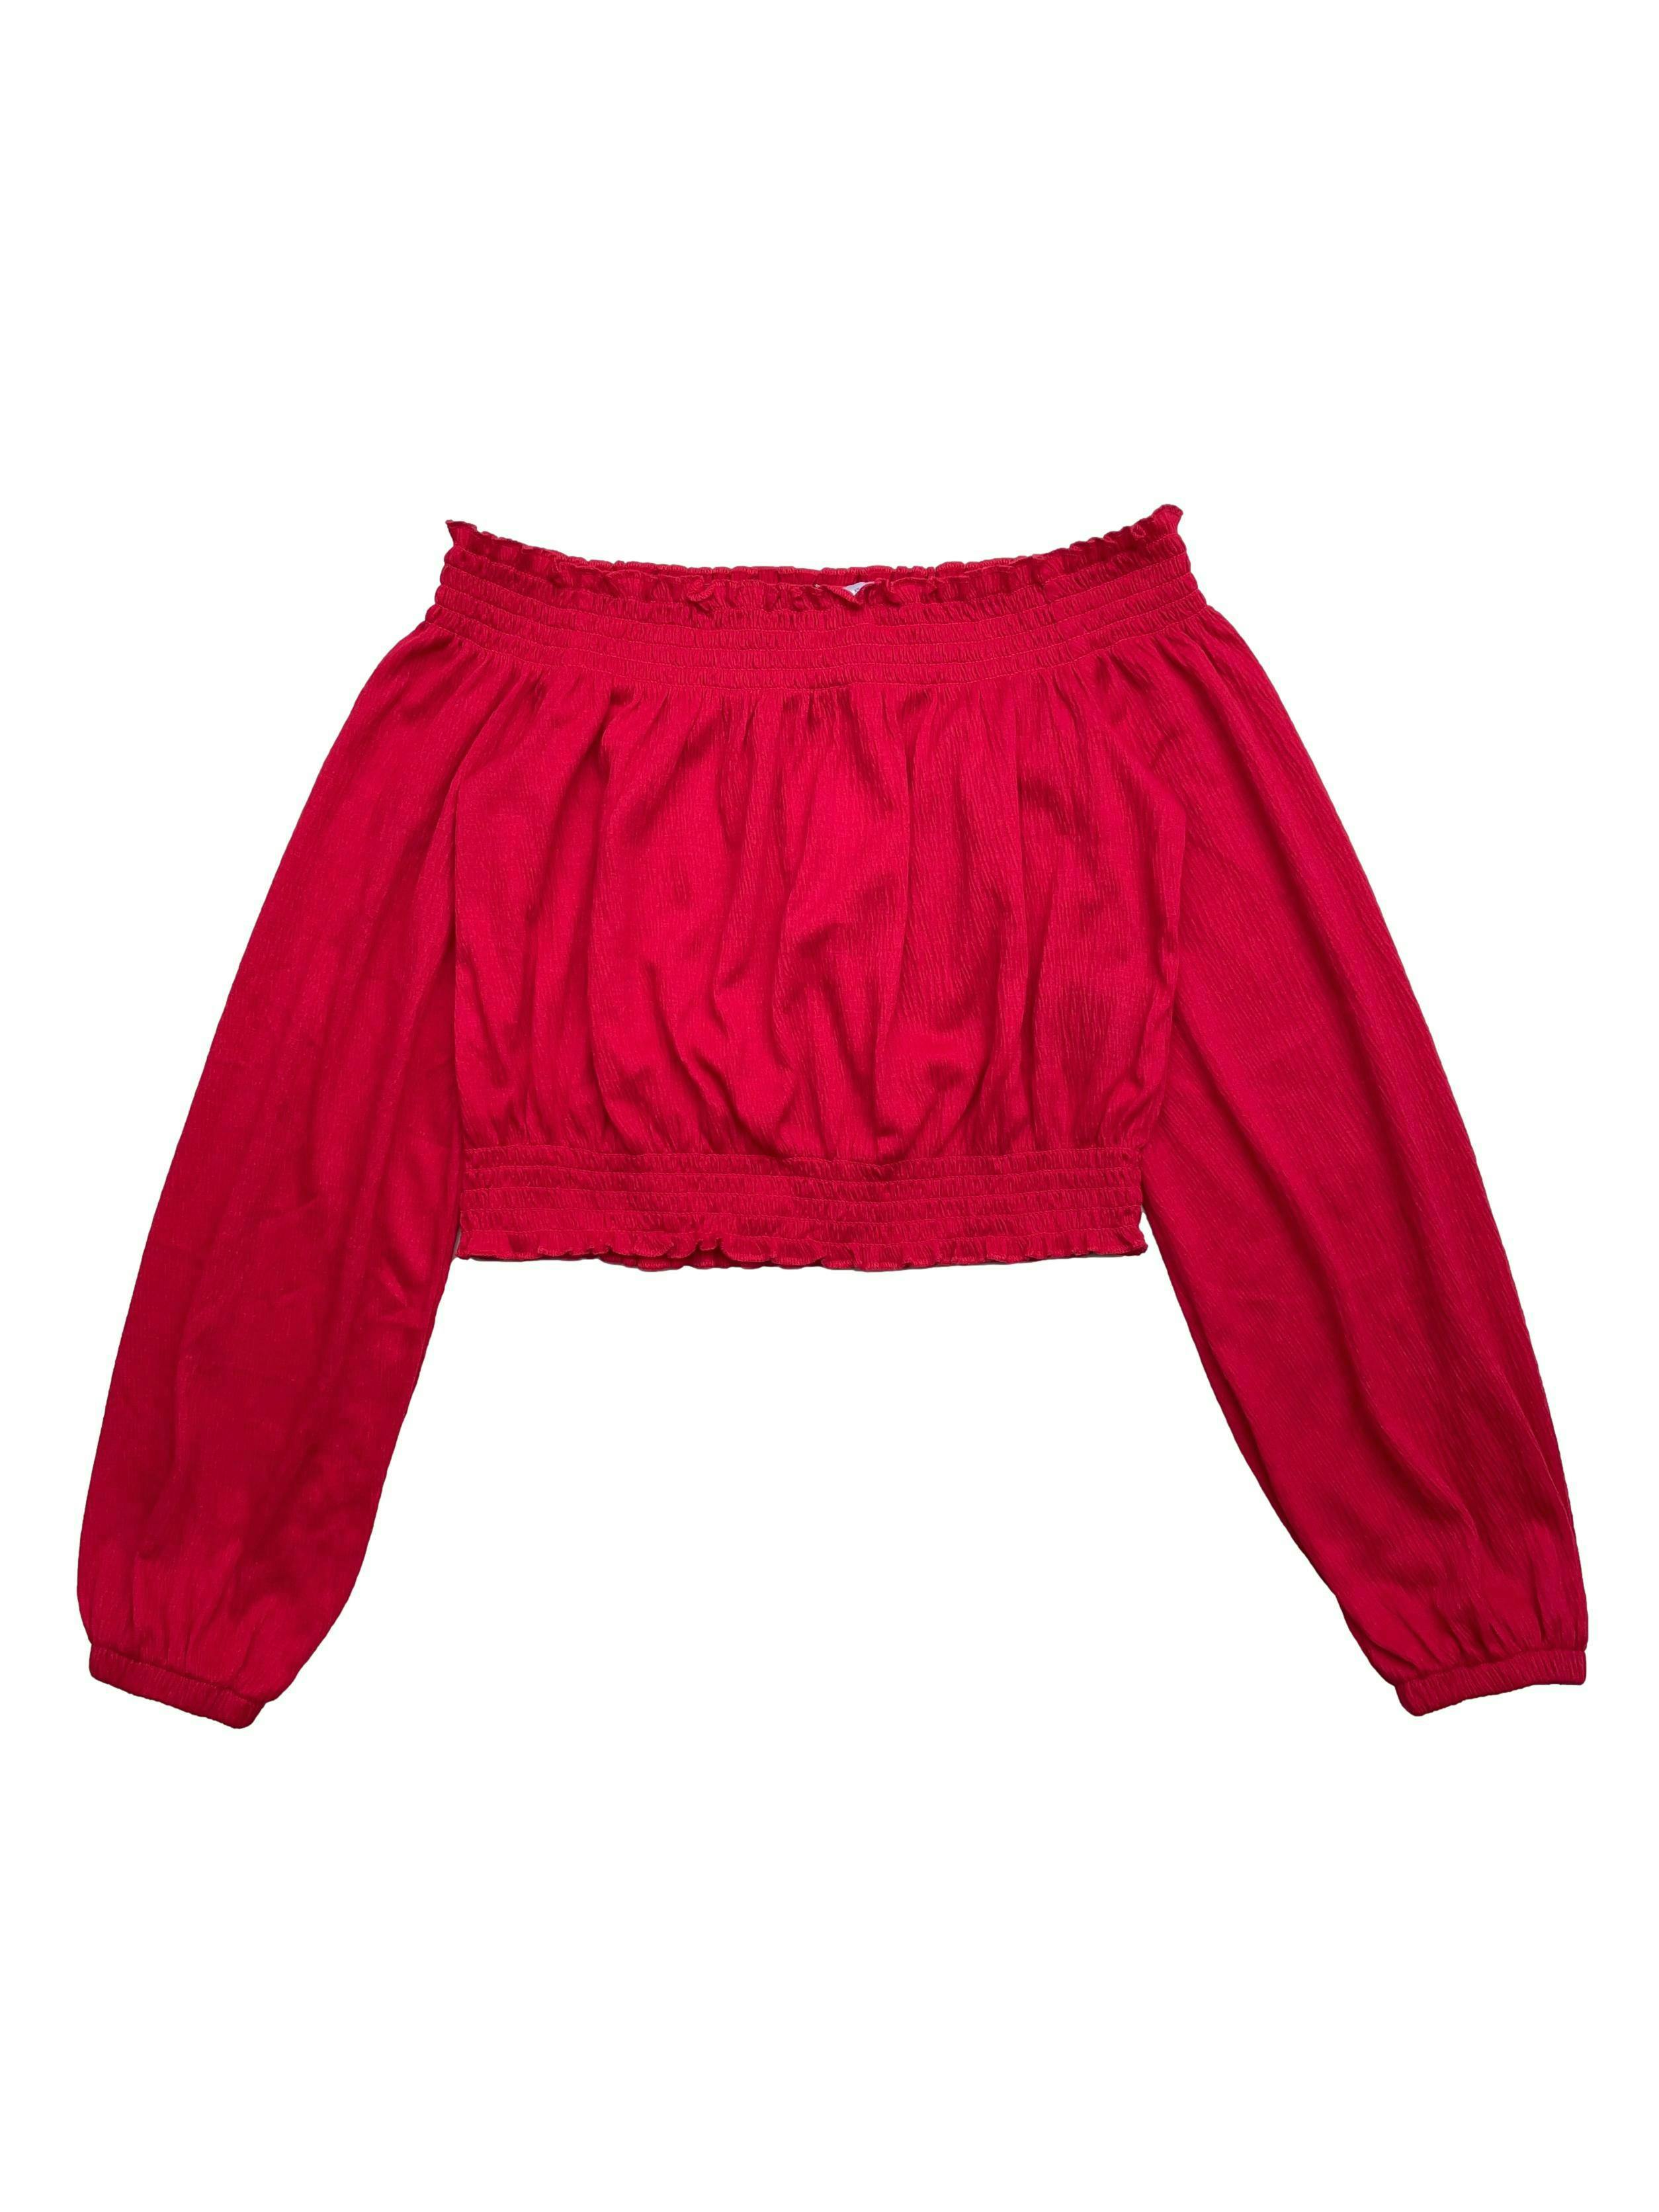 Blusa H&M roja, off shoulder, tela fresca mangas con volumen y elástico en puños. Busto 90cm Largo 32cm